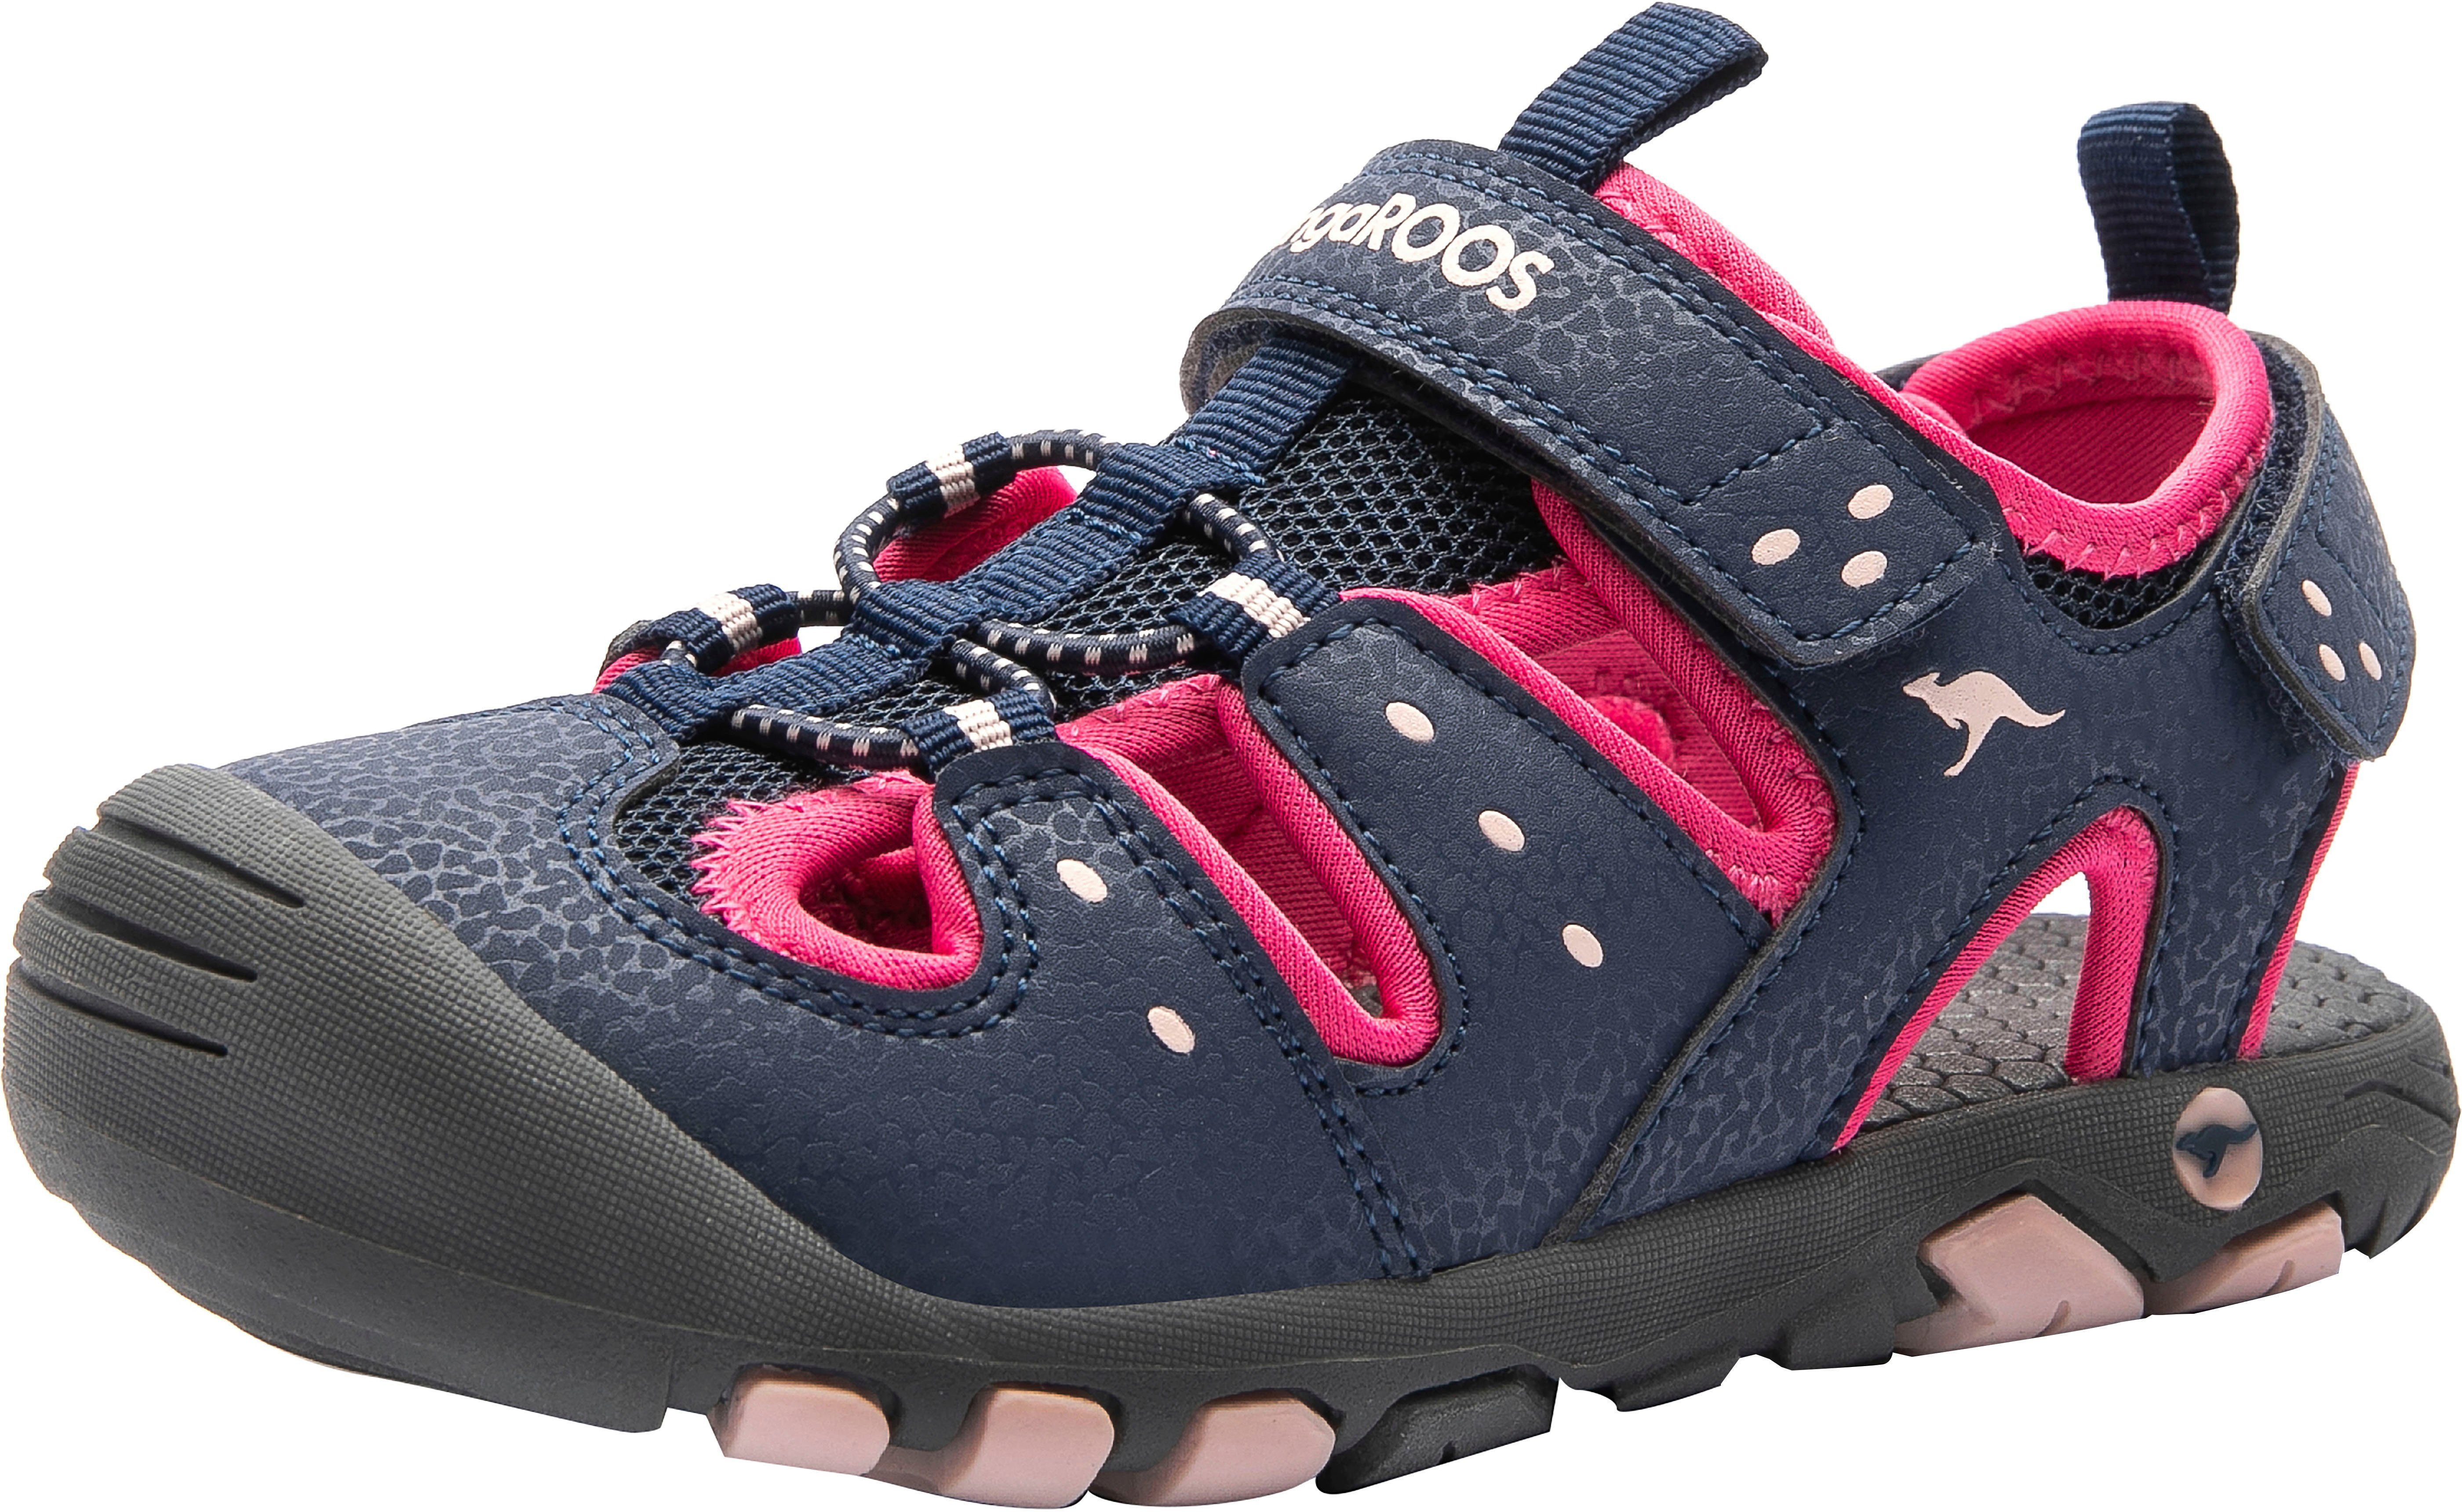 KangaROOS K-Trek Sandale mit Klettverschluss blau-pink | Riemchensandalen